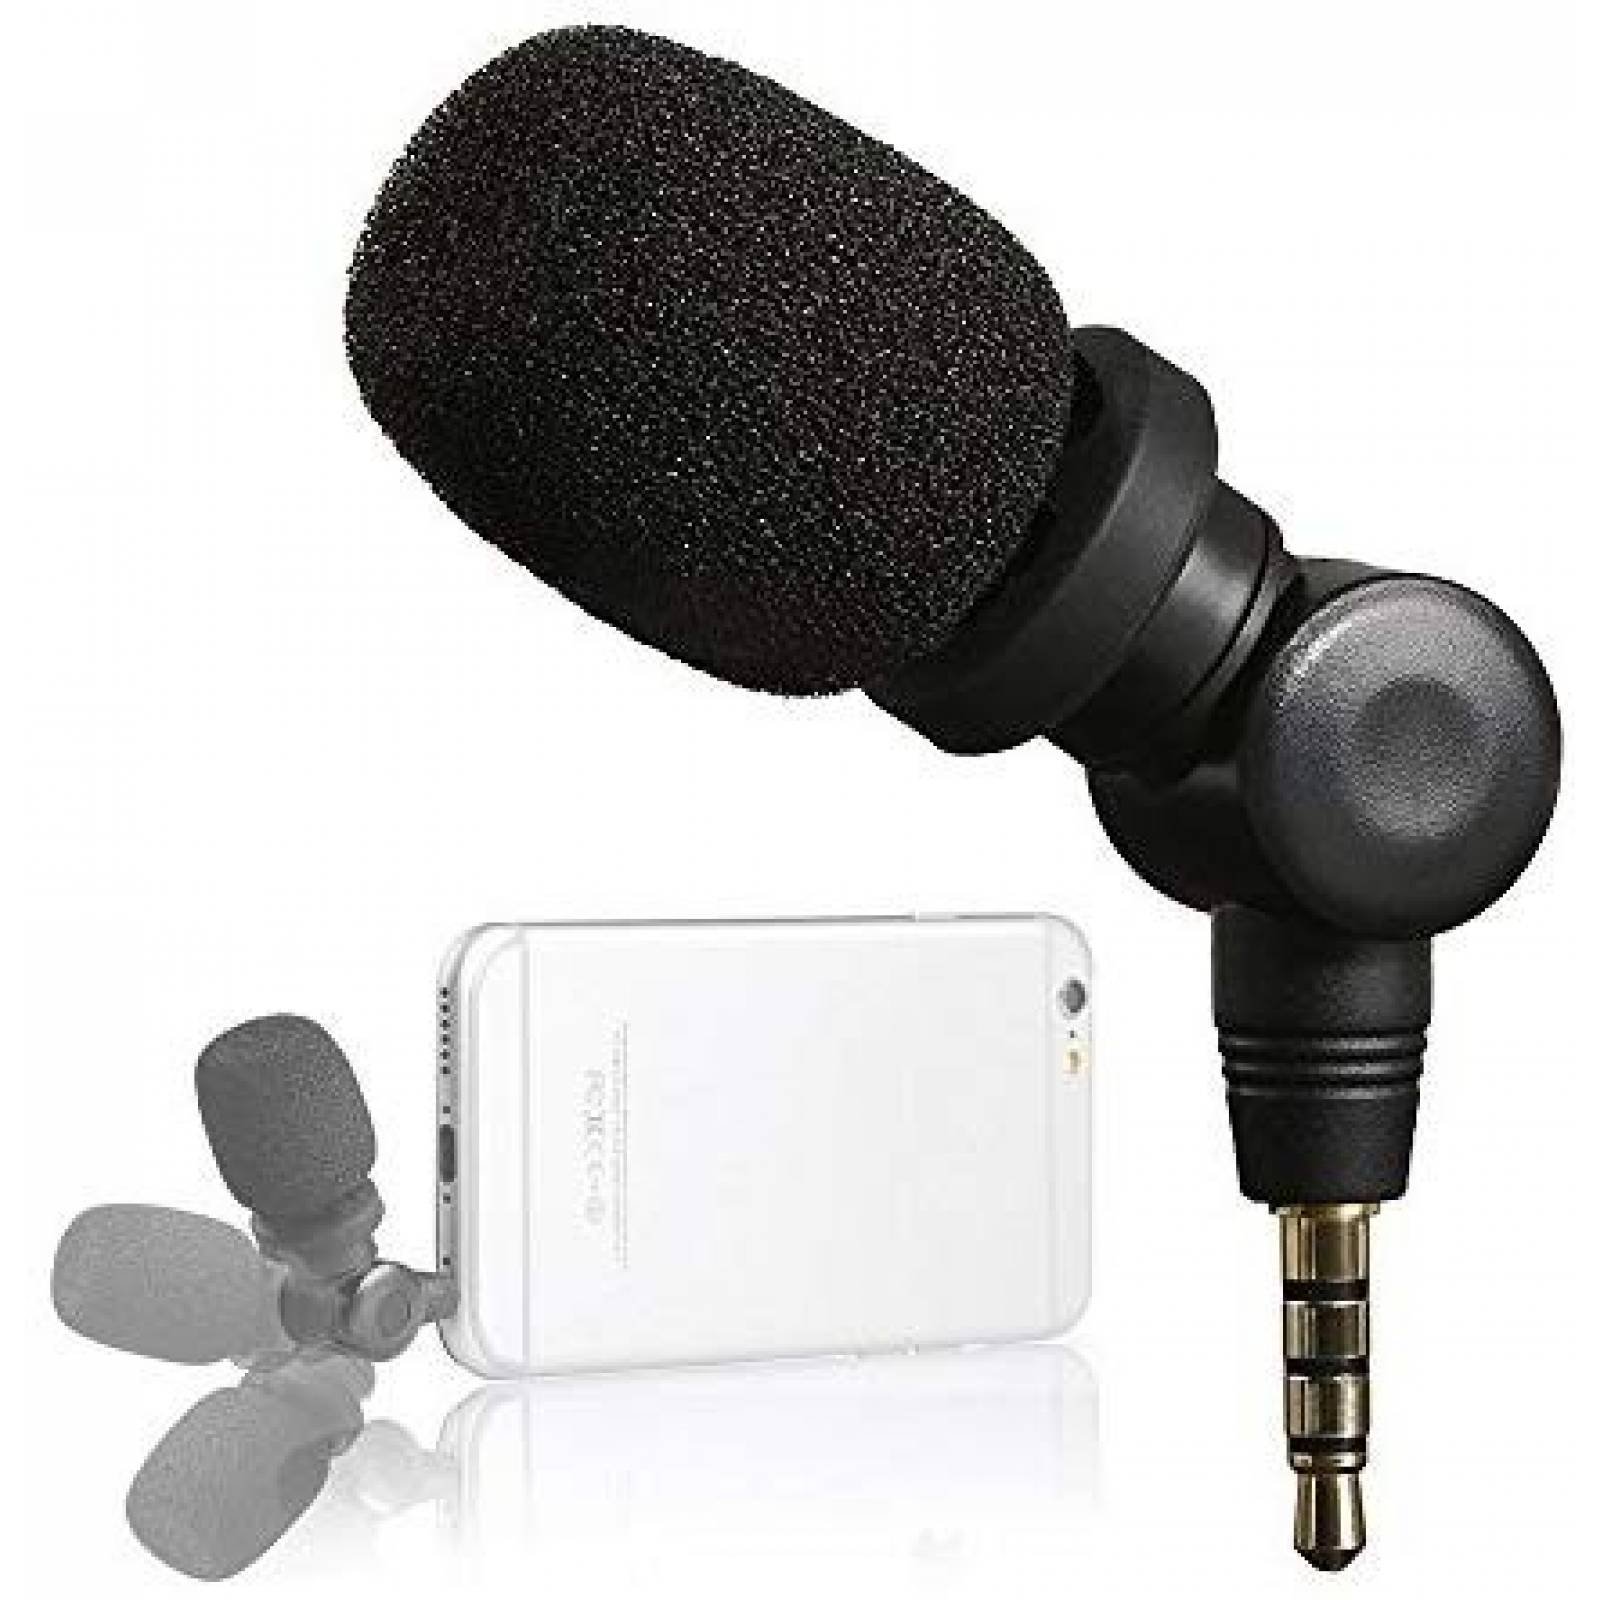 Micrófono Saramonic TRS TRRS para celular SmartMic -negro